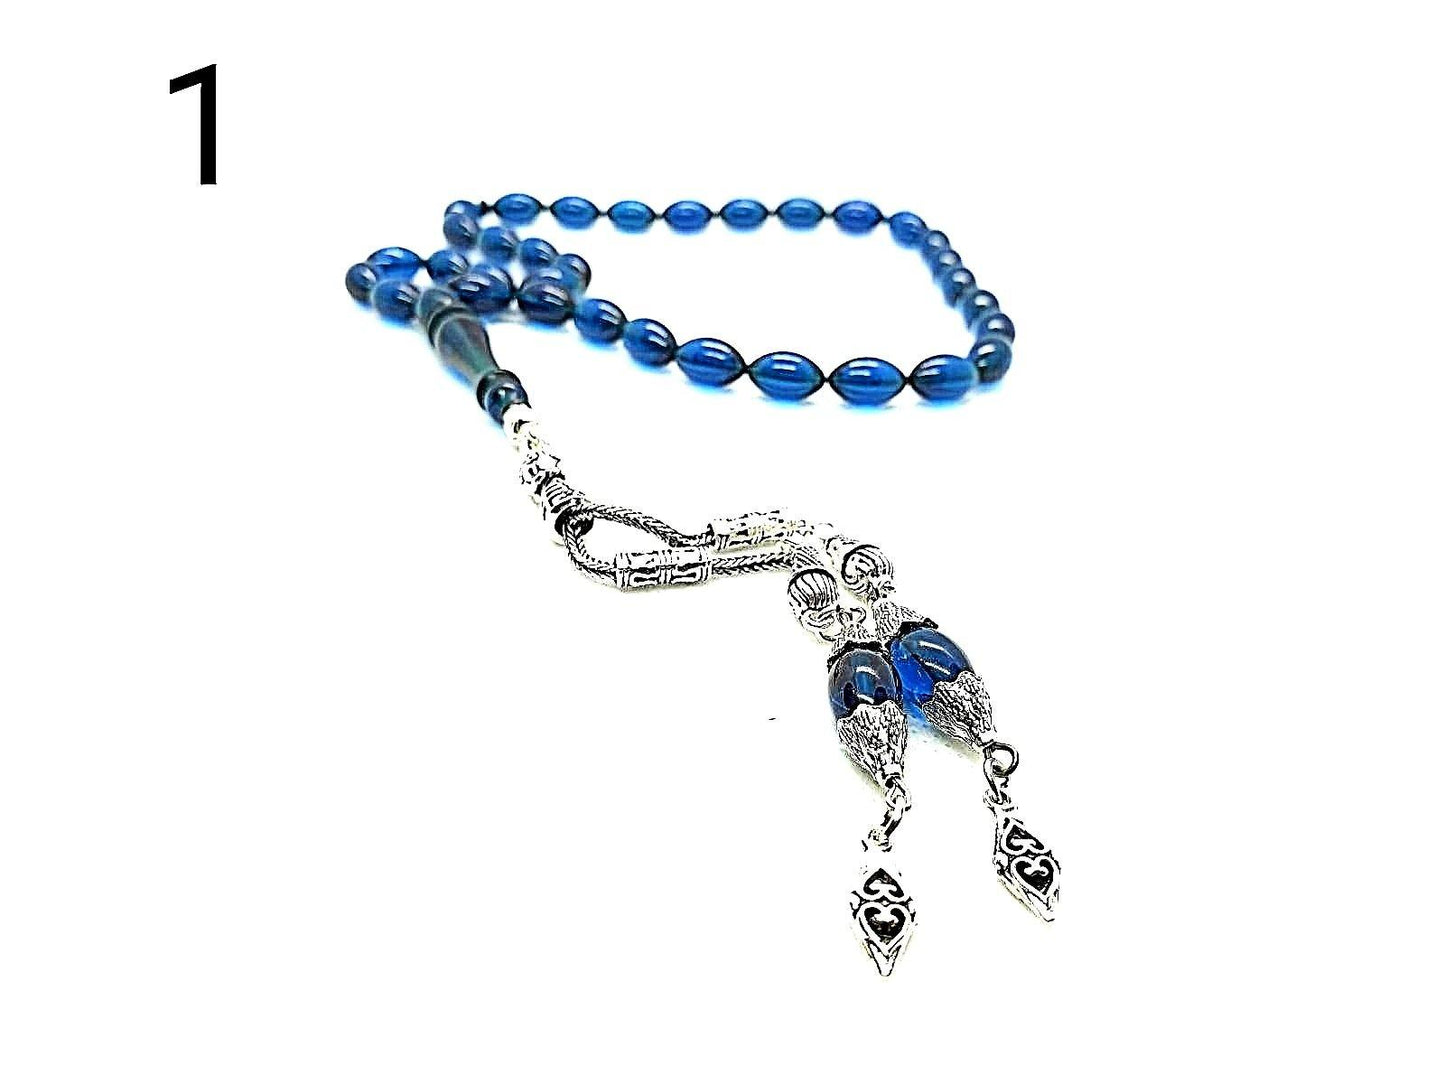   komboloi-greek-worry-beads-faturan-mastic-prayer-beads-rosary-beads-turkish-tasbih- handmade-gemstone